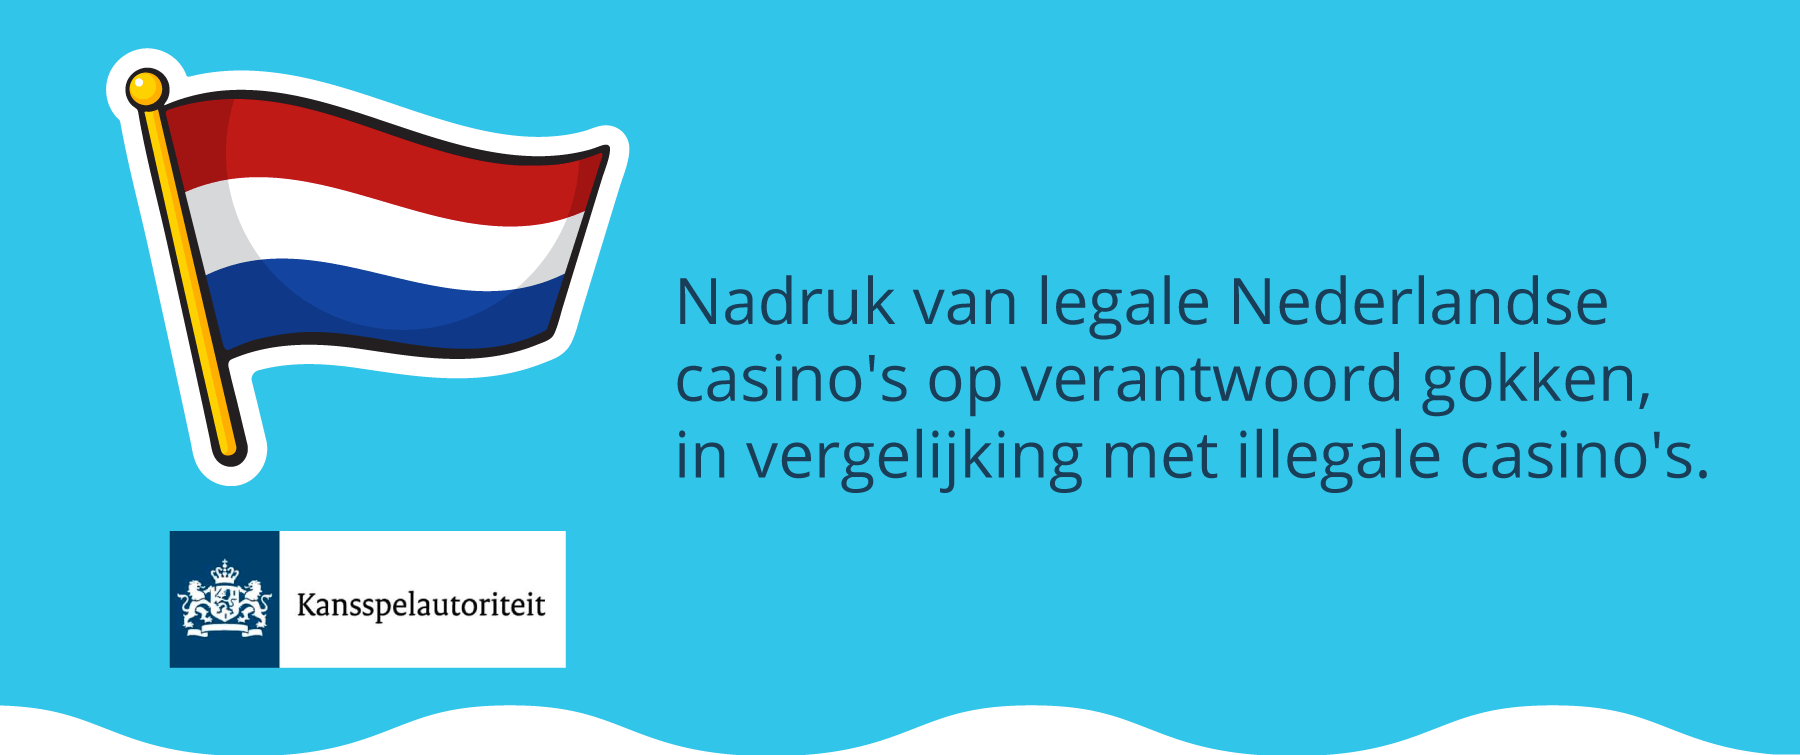 Legale Nederlandse casino’s staan voor verantwoord spel